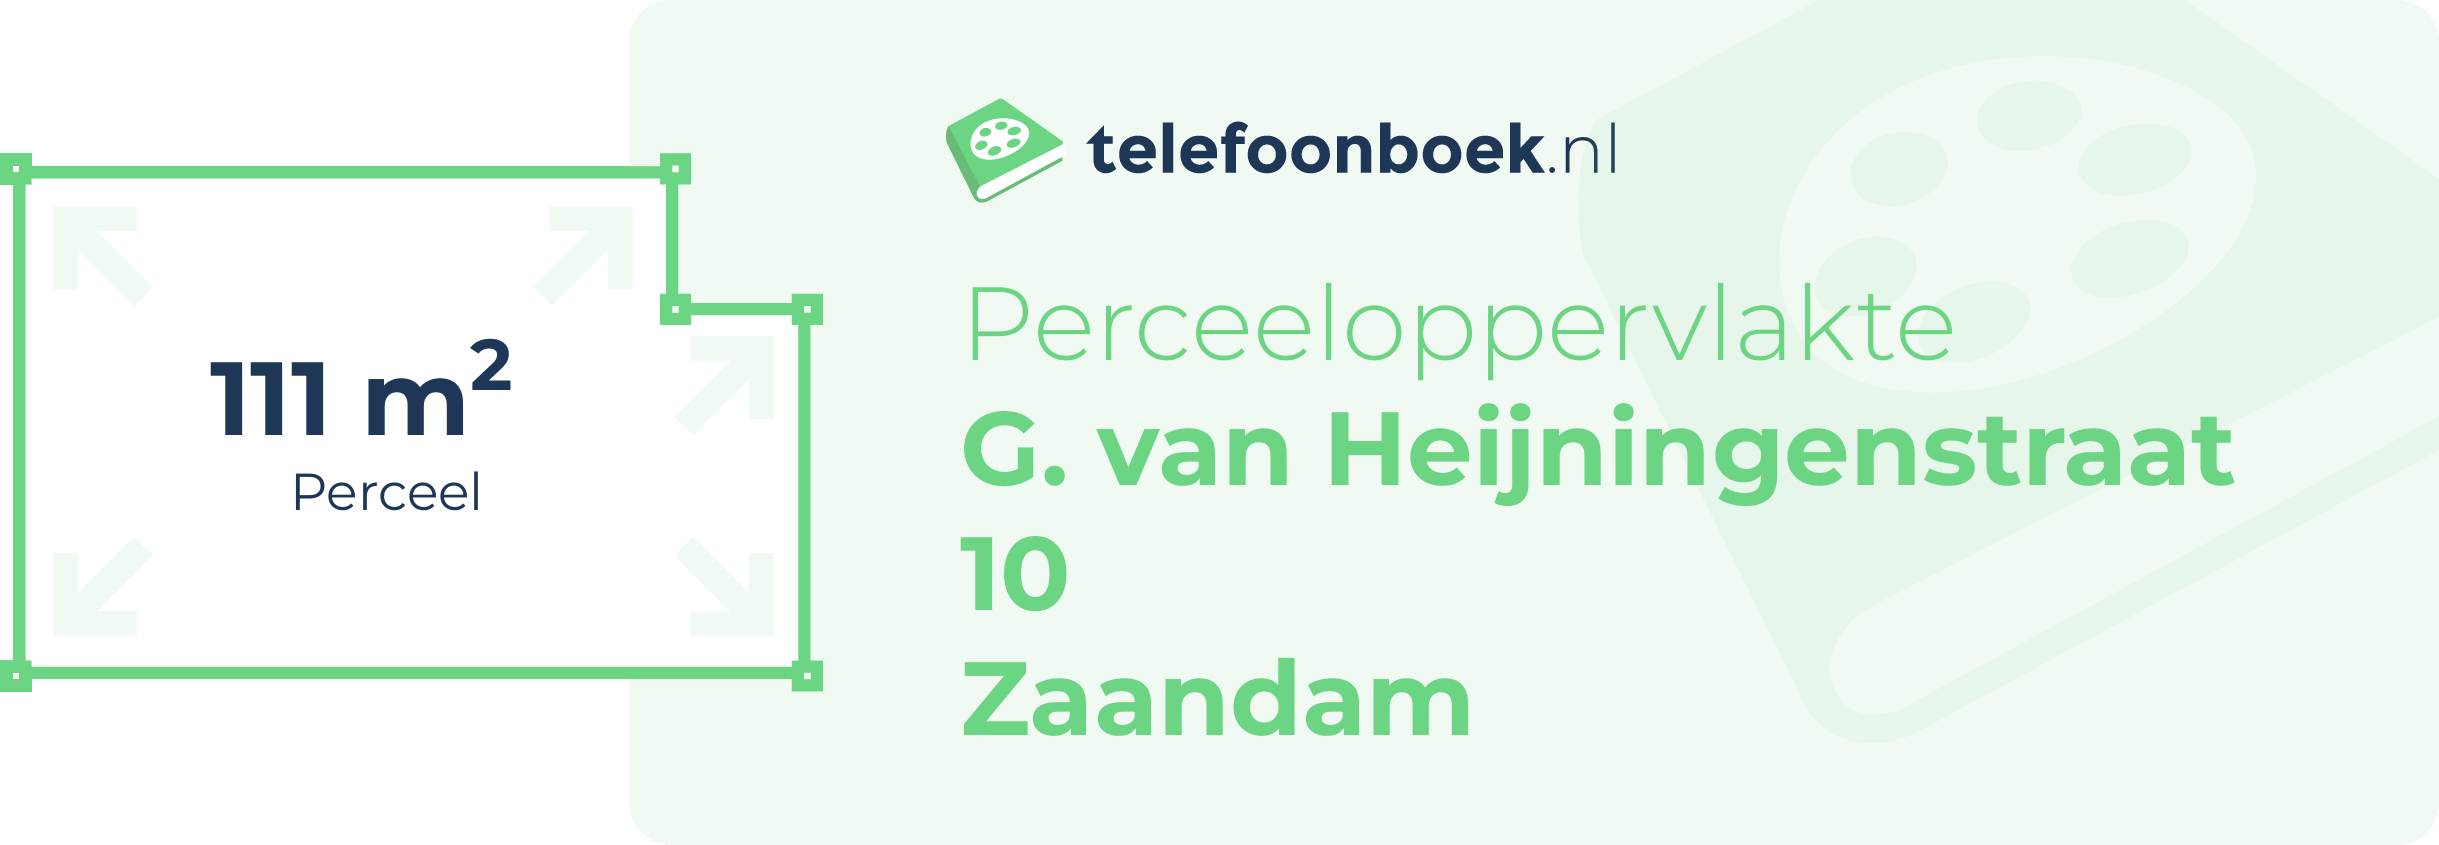 Perceeloppervlakte G. Van Heijningenstraat 10 Zaandam